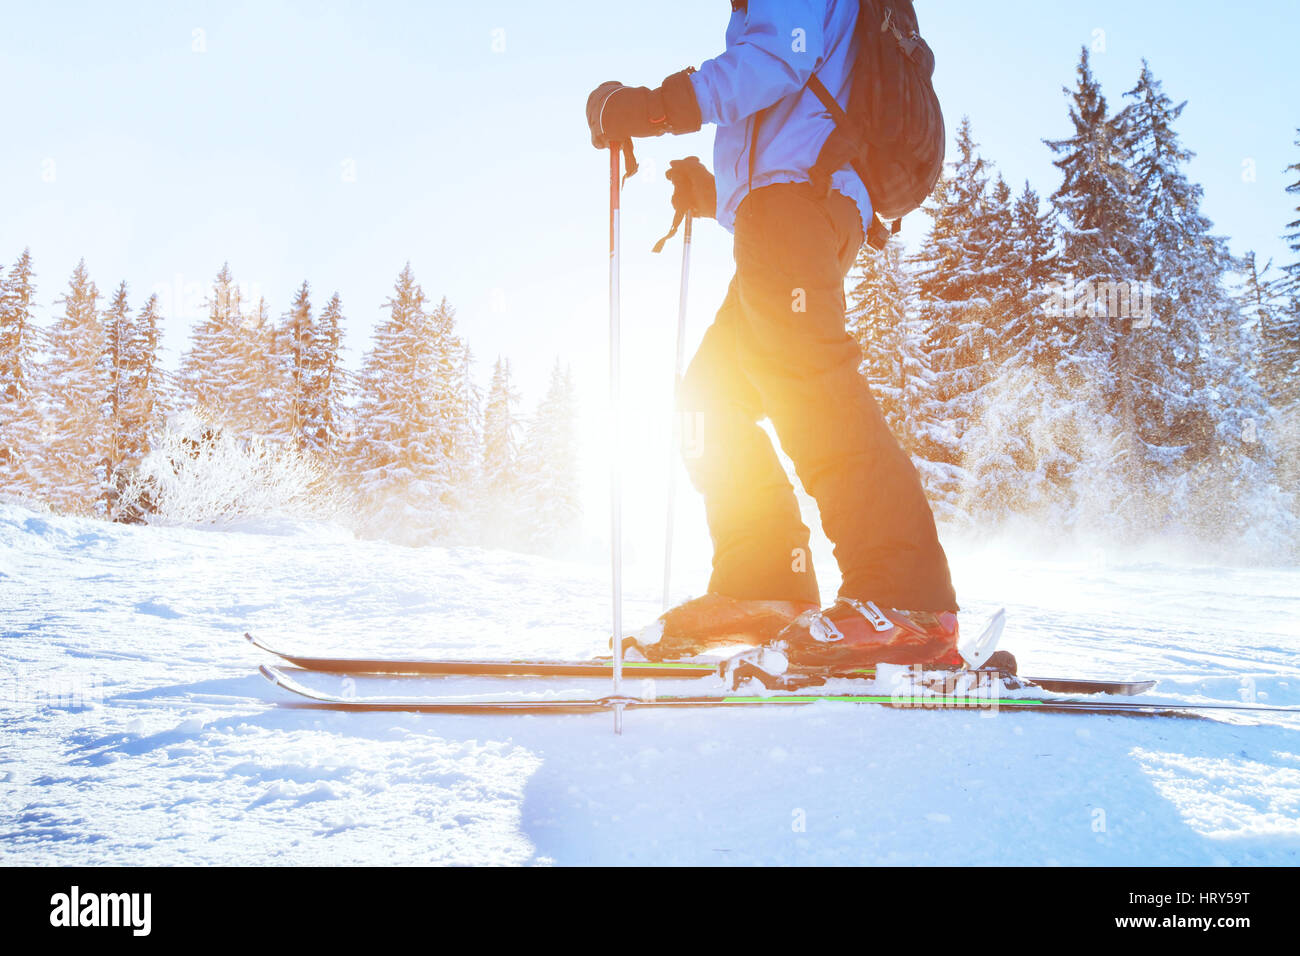 En ski alpin, le ski de fond, les montagnes de la forêt d'hiver Banque D'Images